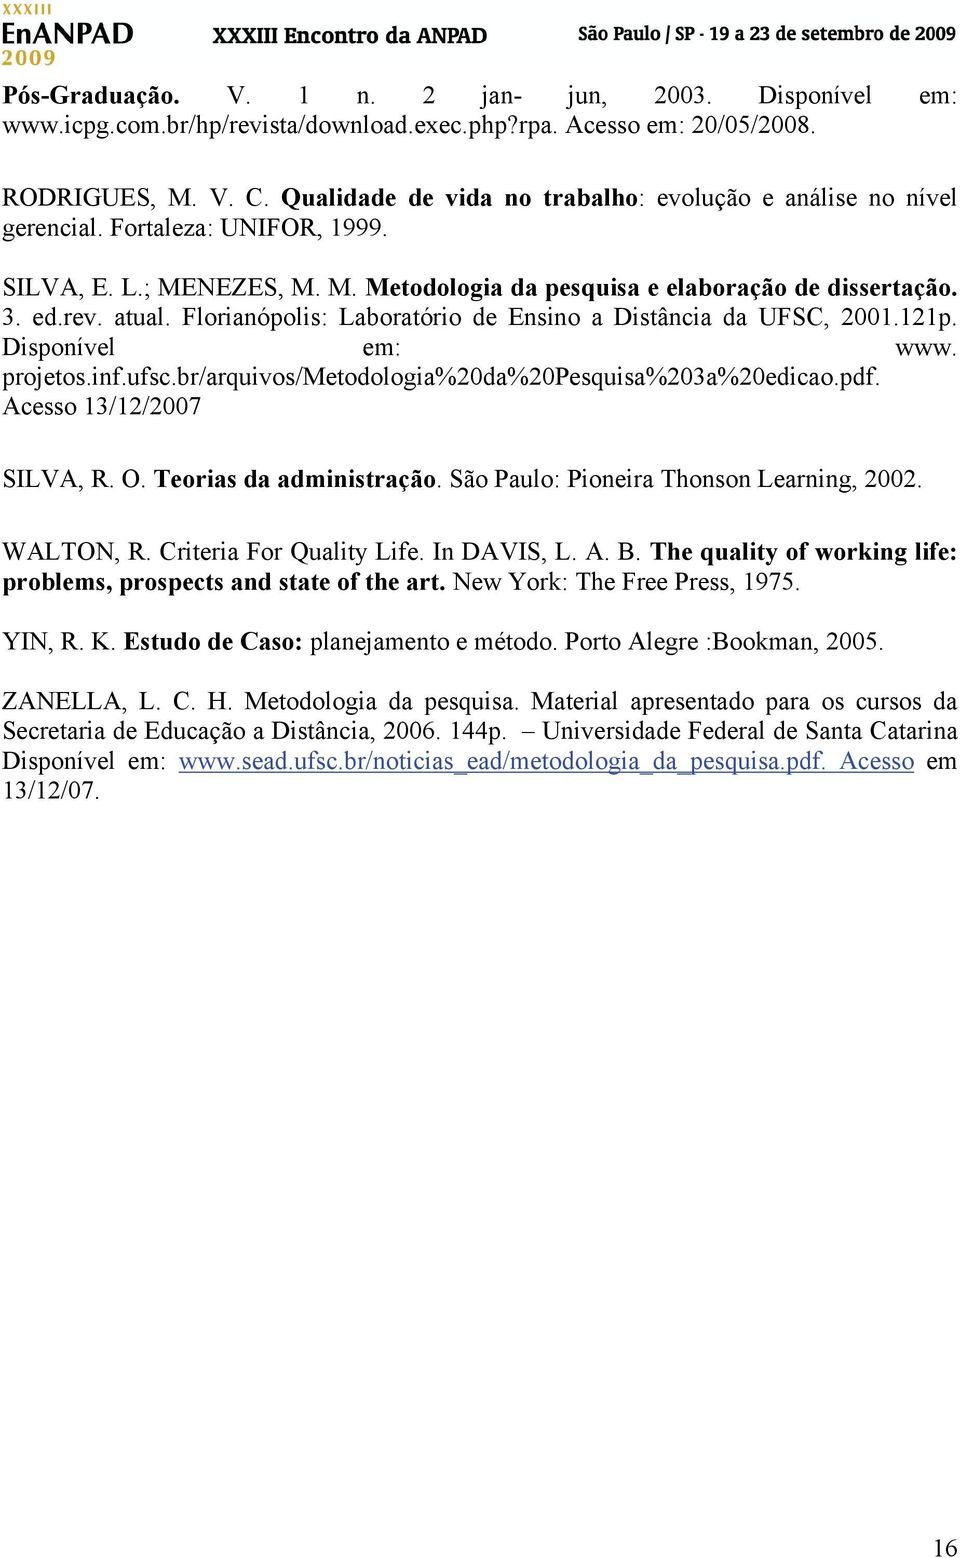 Florianópolis: Laboratório de Ensino a Distância da UFSC, 2001.121p. Disponível em: www. projetos.inf.ufsc.br/arquivos/metodologia%20da%20pesquisa%203a%20edicao.pdf. Acesso 13/12/2007 SILVA, R. O.